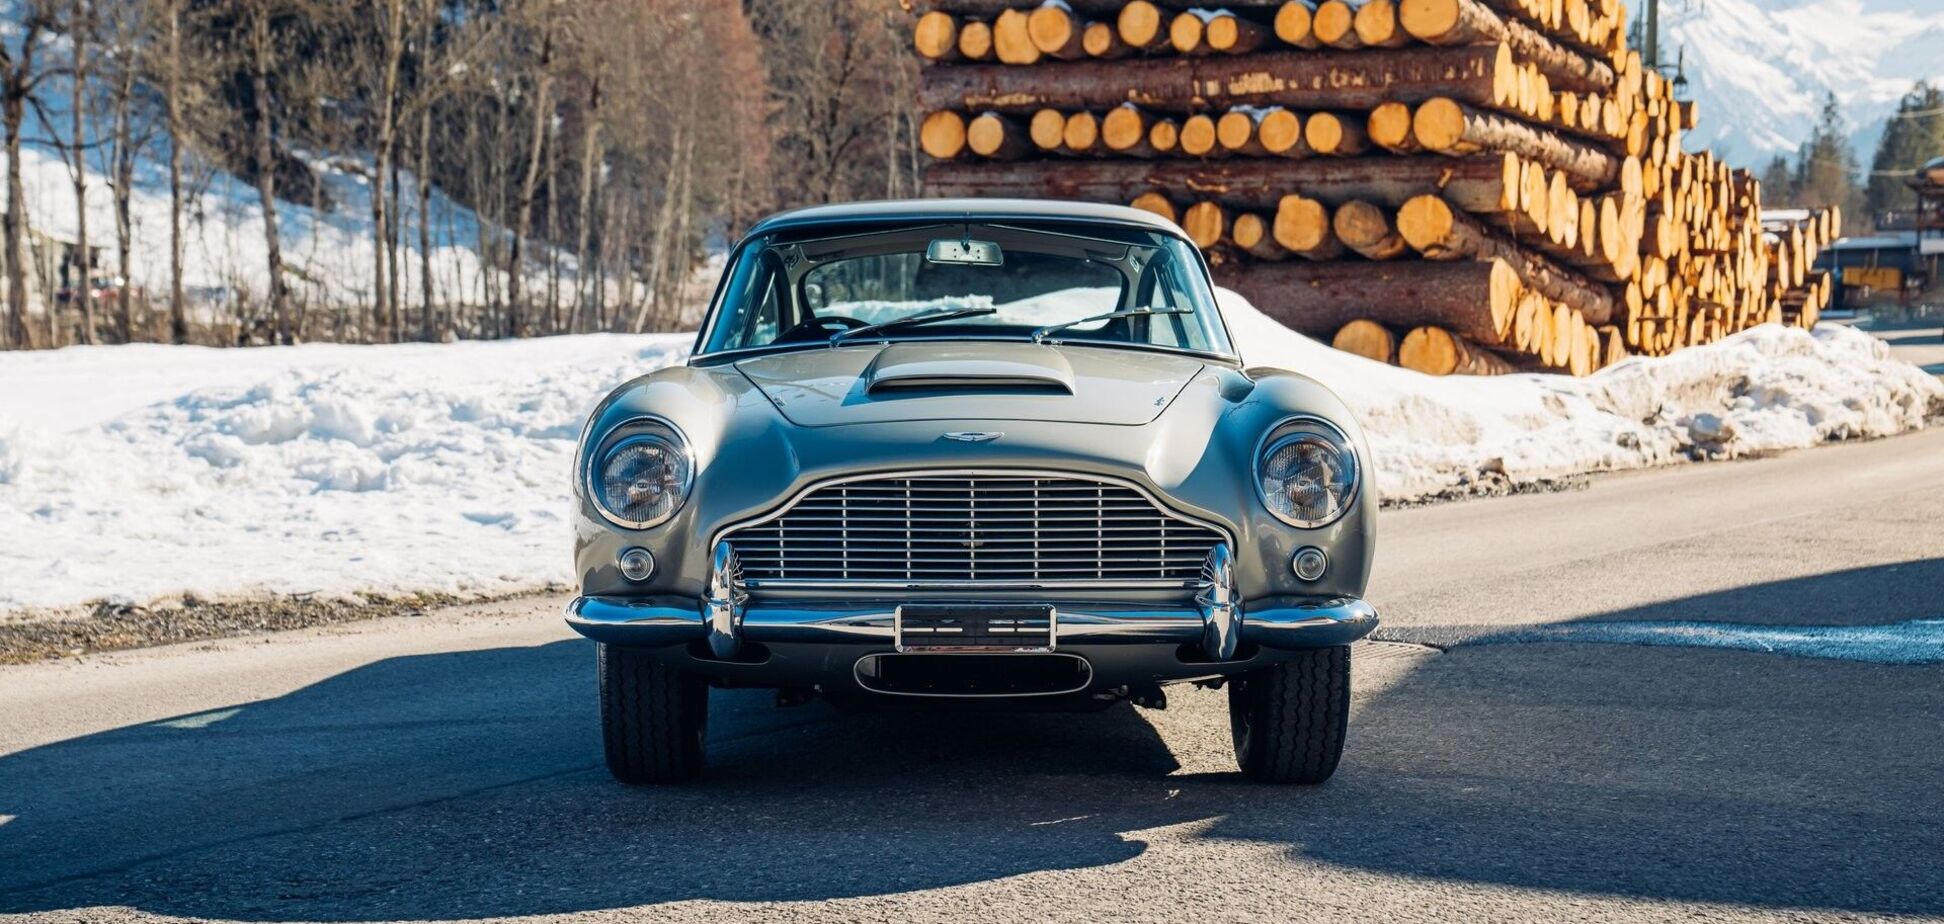 Aston Matin Шона Коннери выставили на аукцион